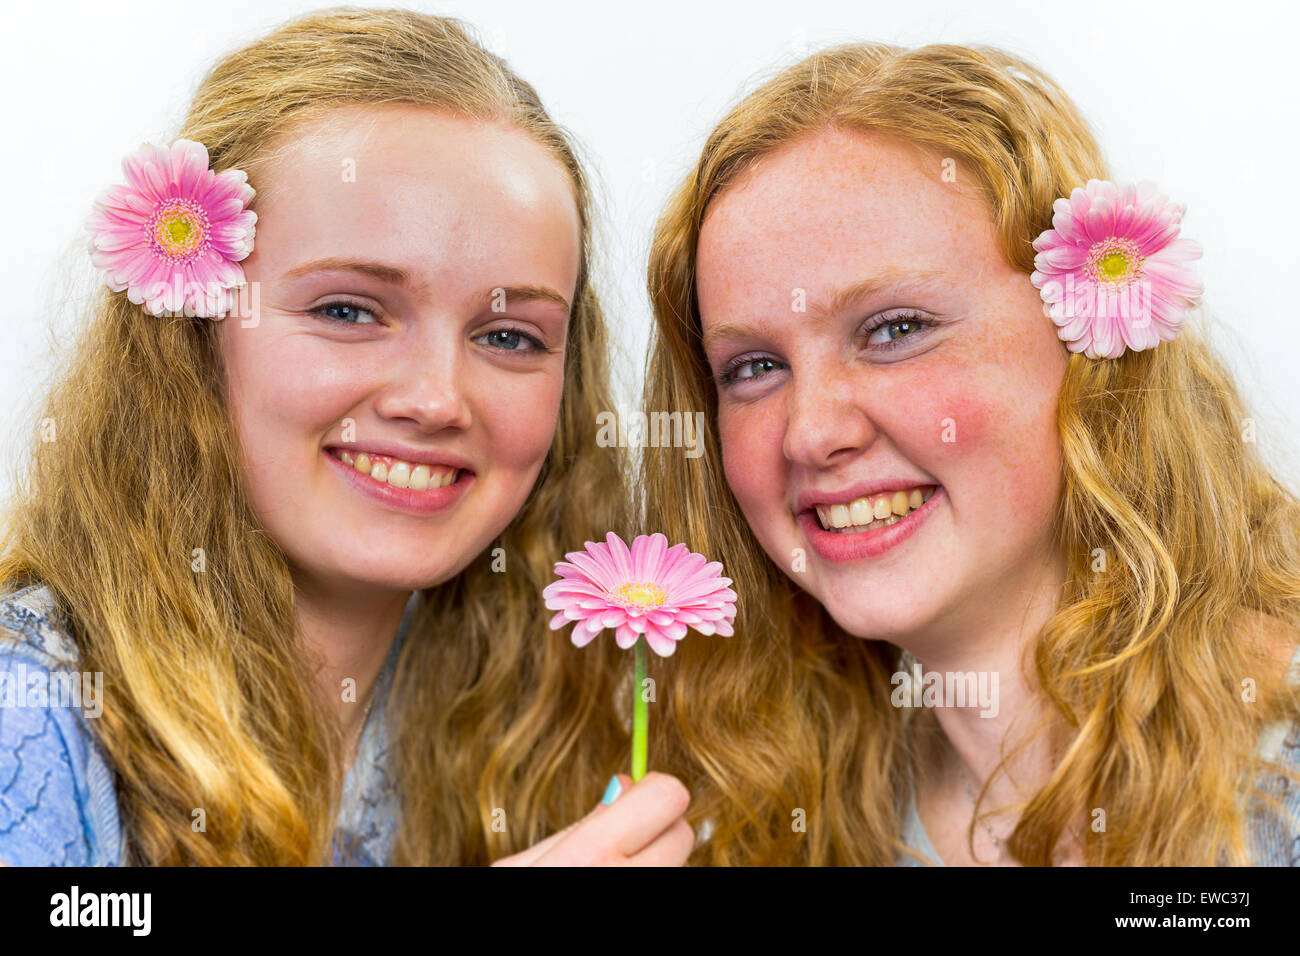 Zwei kaukasische Mädchen im Teenageralter lachend mit rosa Blüten in langen Haaren isoliert auf weißem Hintergrund Stockfoto